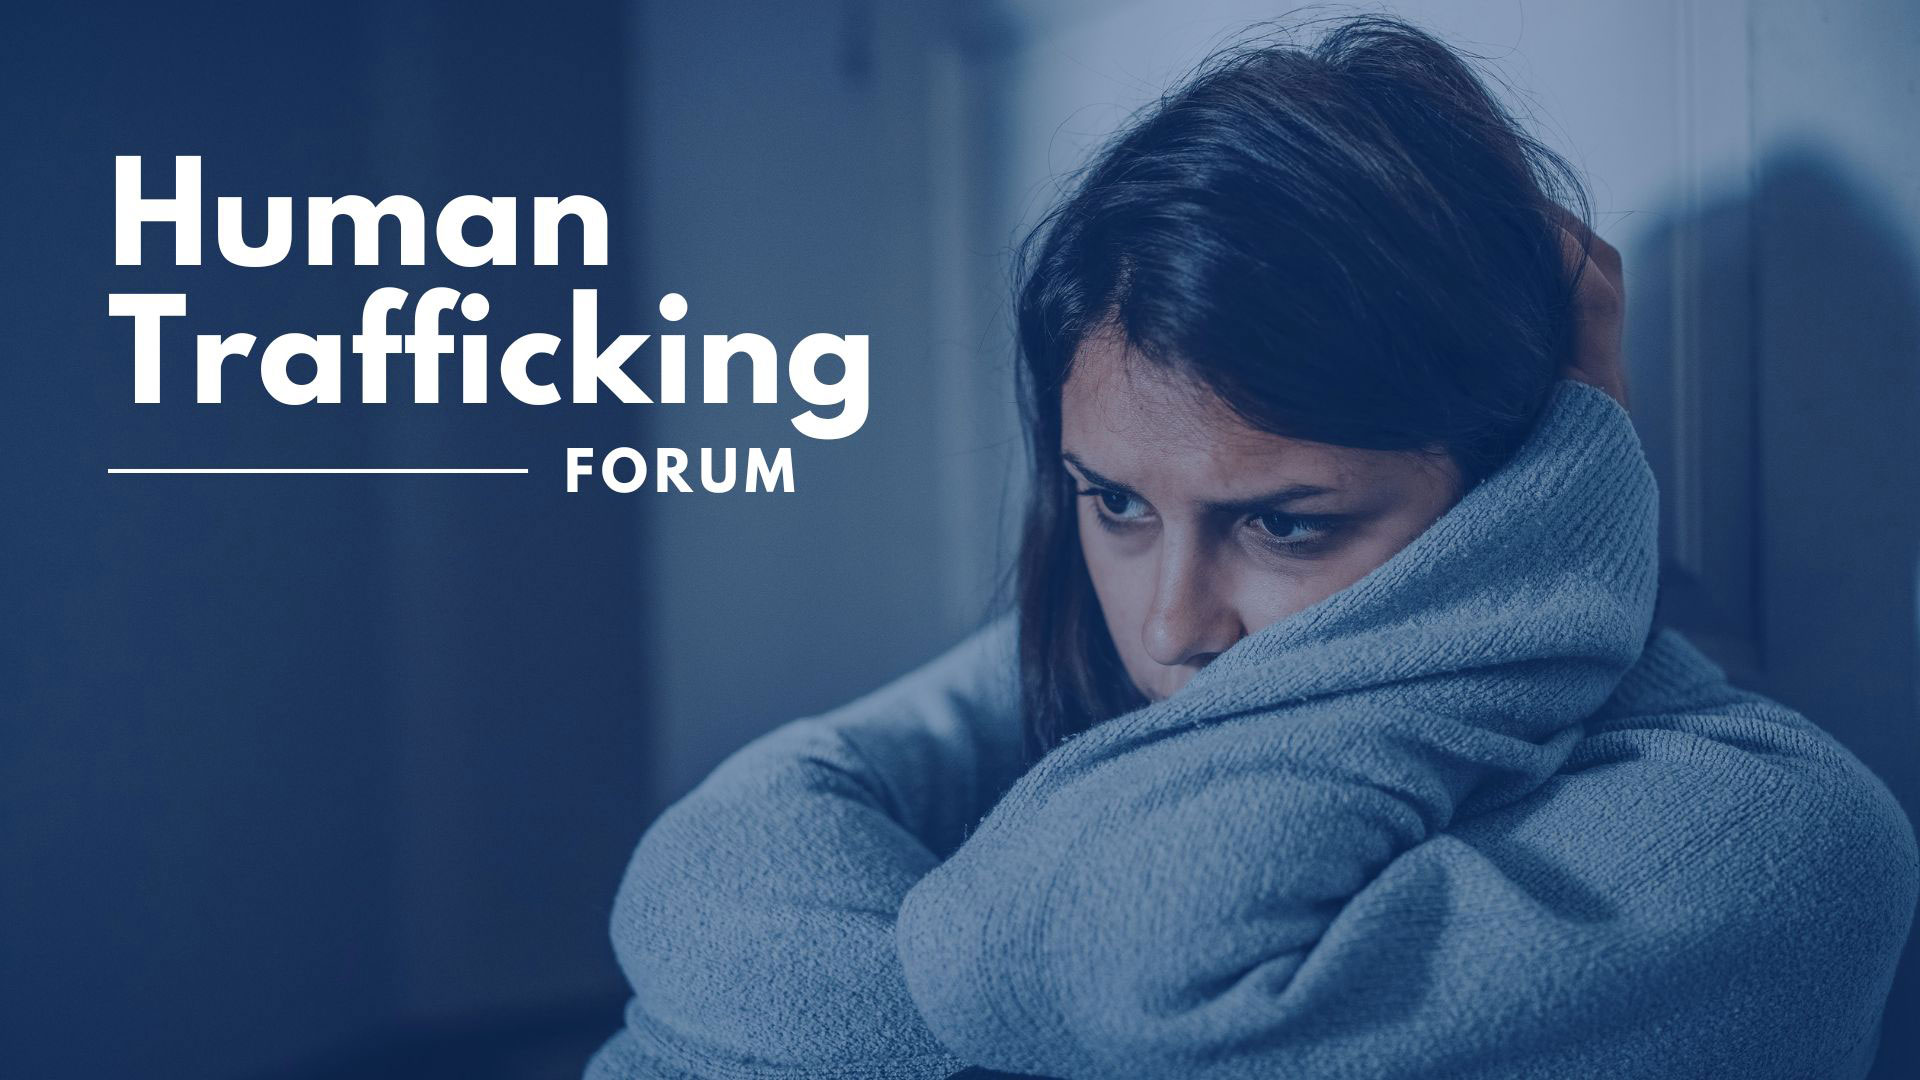 Human Trafficking Forum